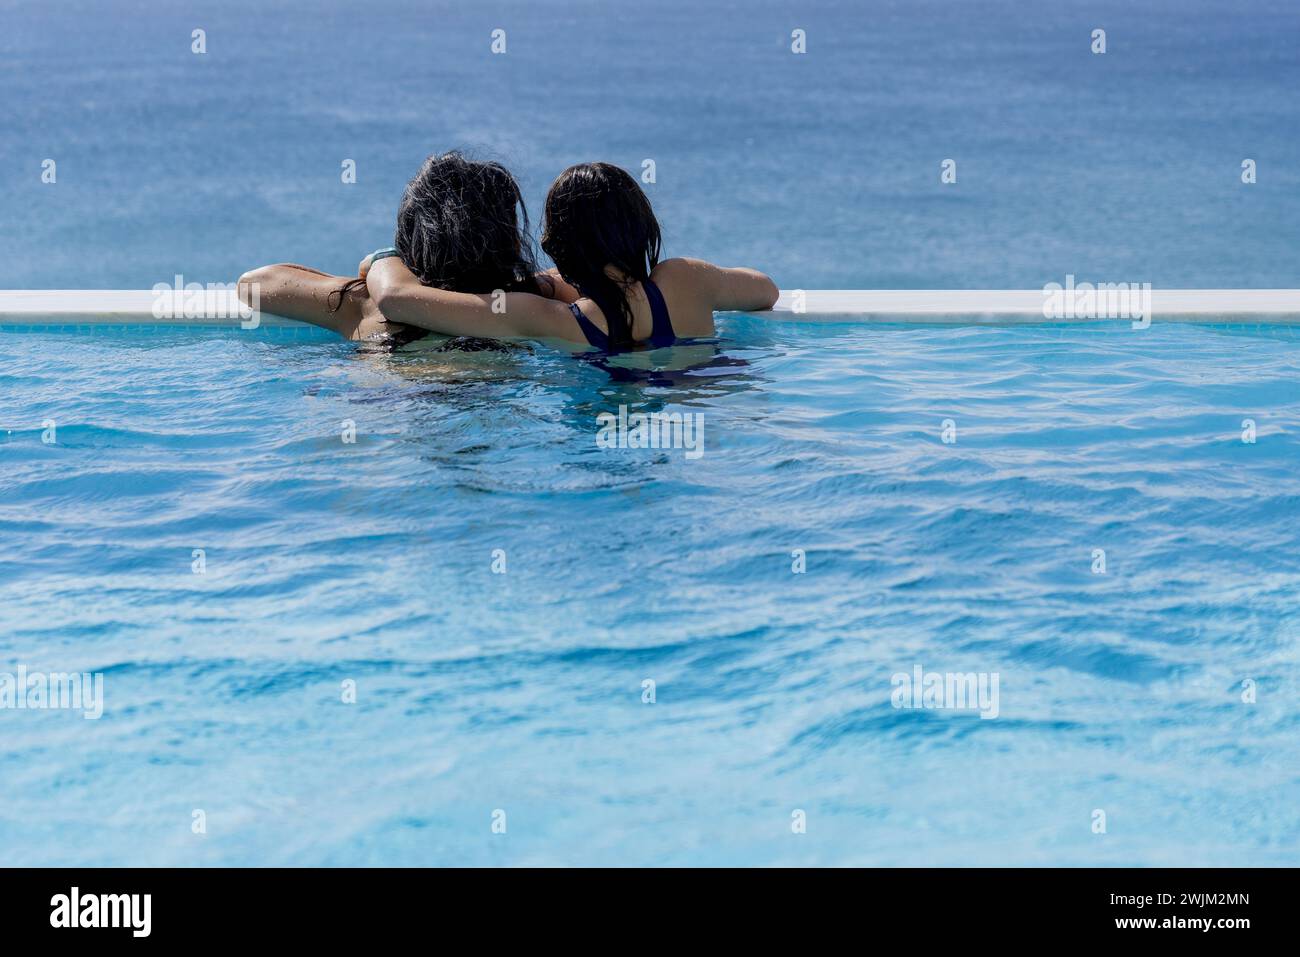 Blick von hinten auf zwei Personen, die sich umarmen, während sie das Meer vom Innenpool aus betrachten Stockfoto